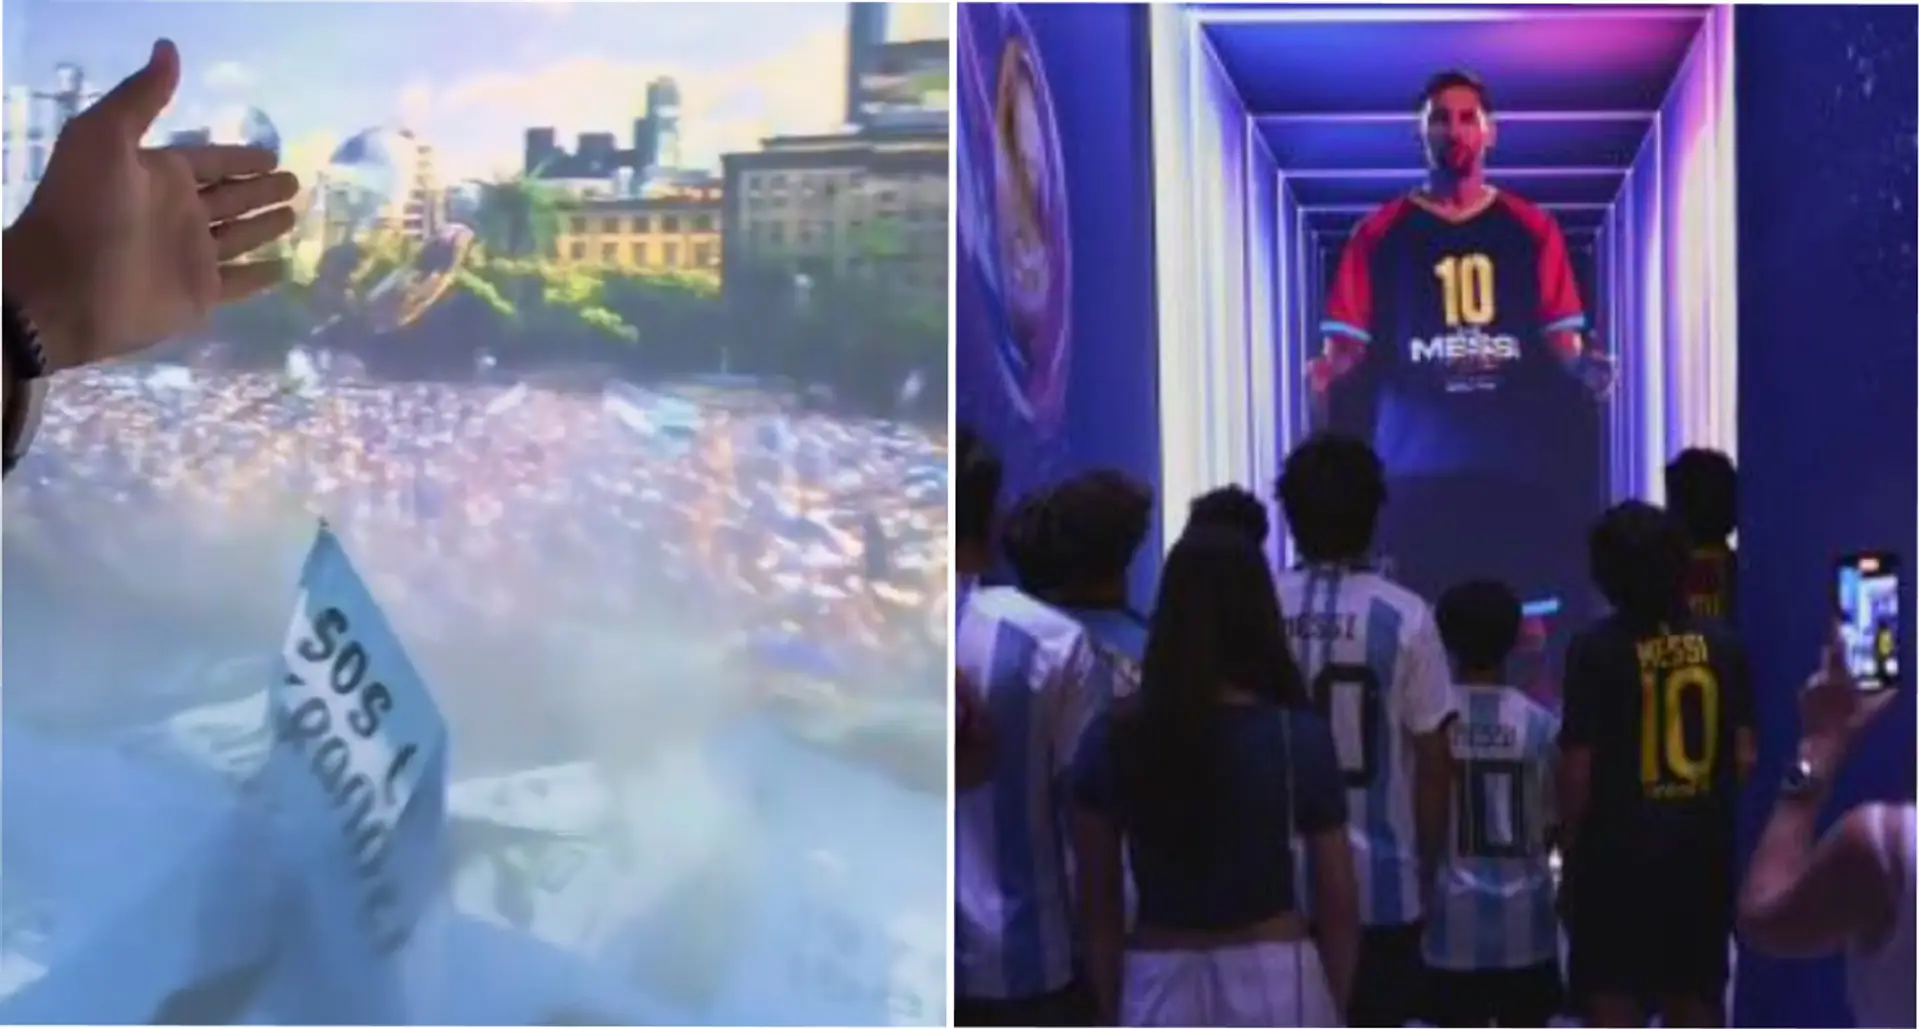 Les premières images de la première exposition Messi Experience au monde émergent – vous allez l'adorer